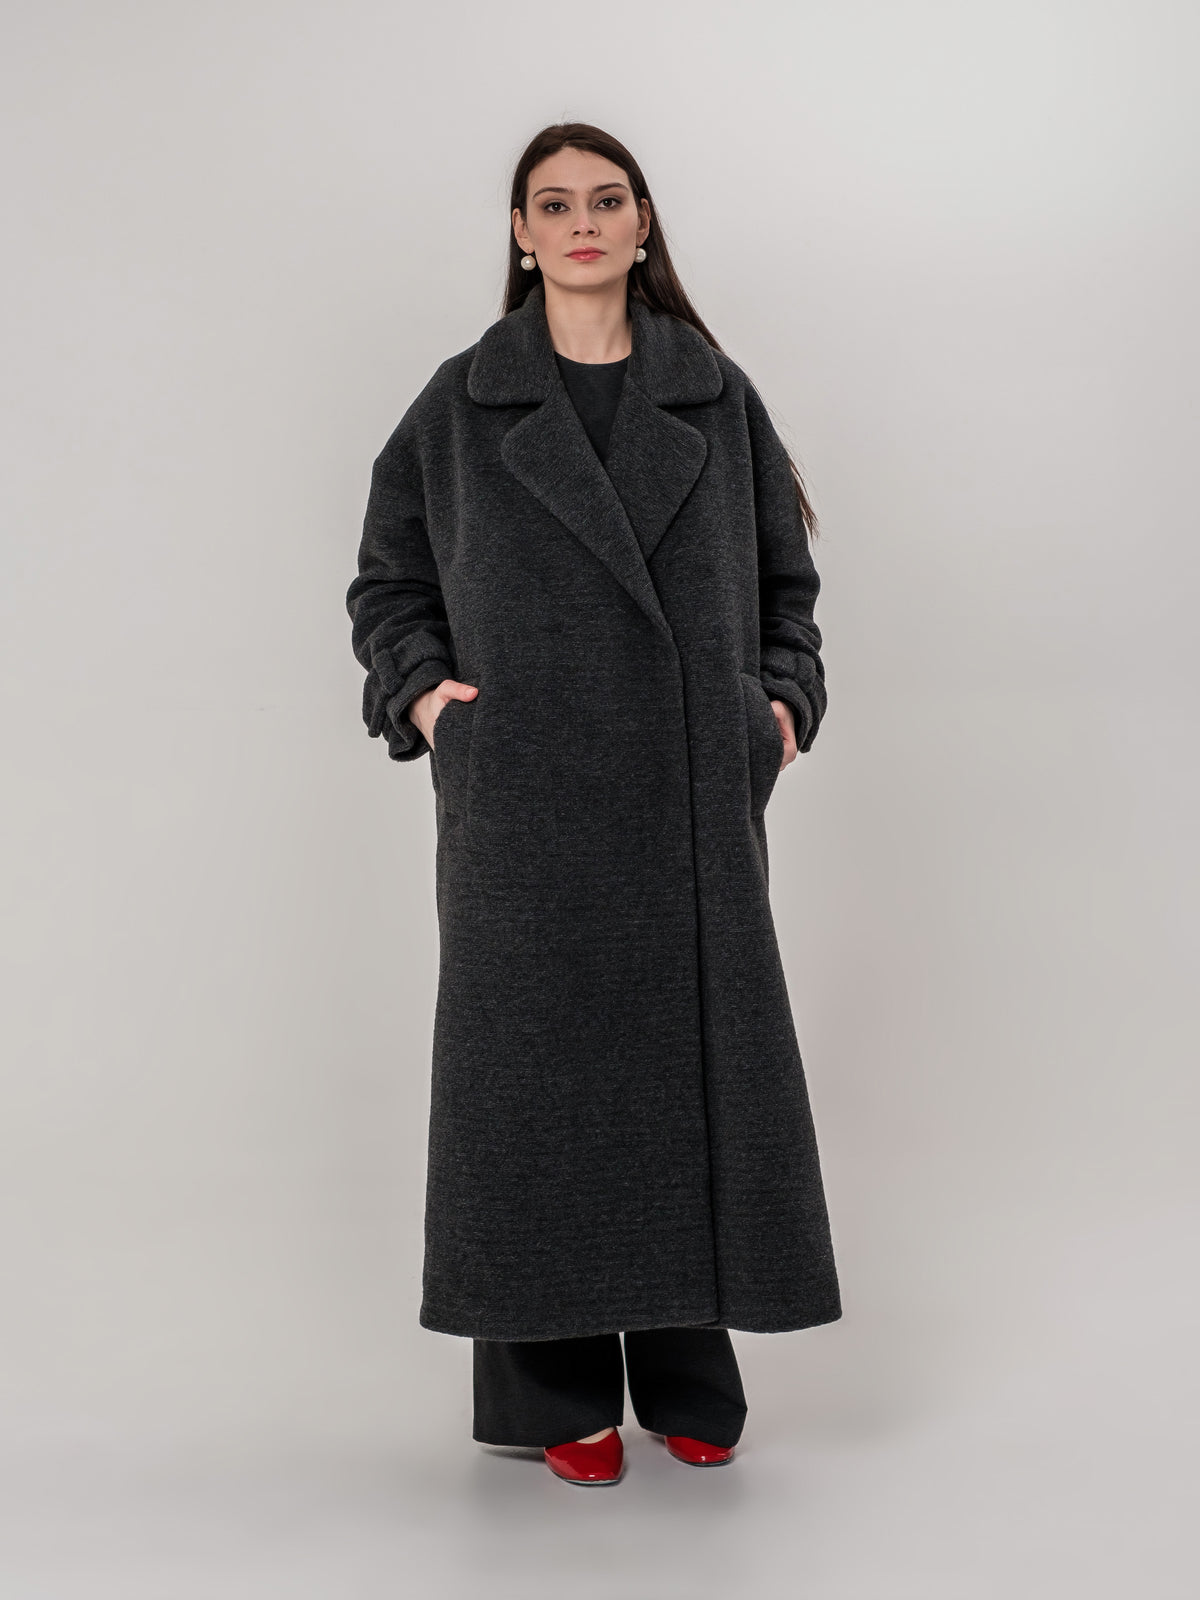 Dark grey long wool coat